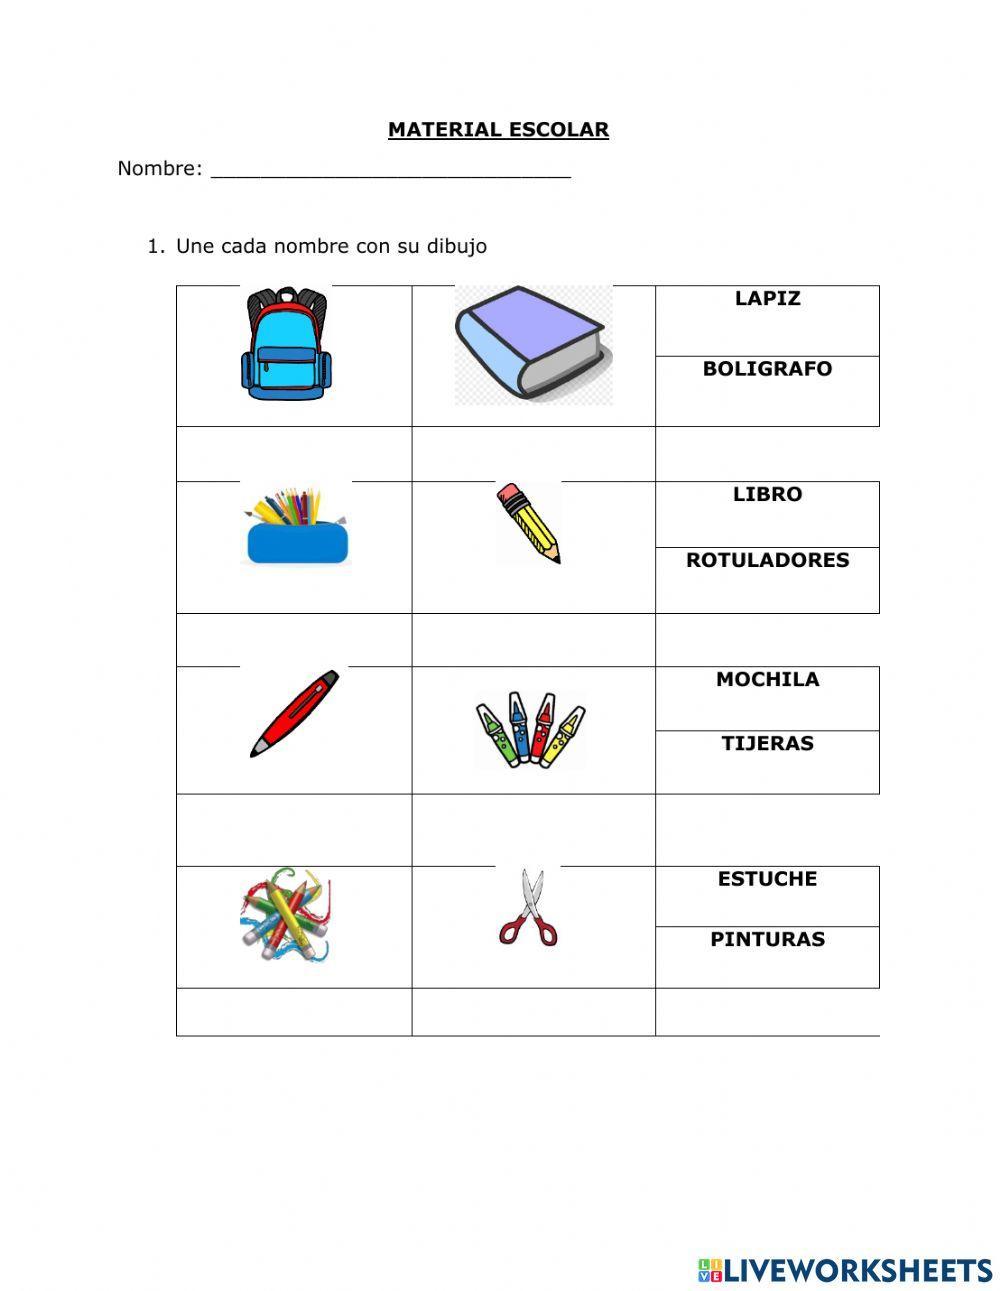 Vocabulario material escolar worksheet